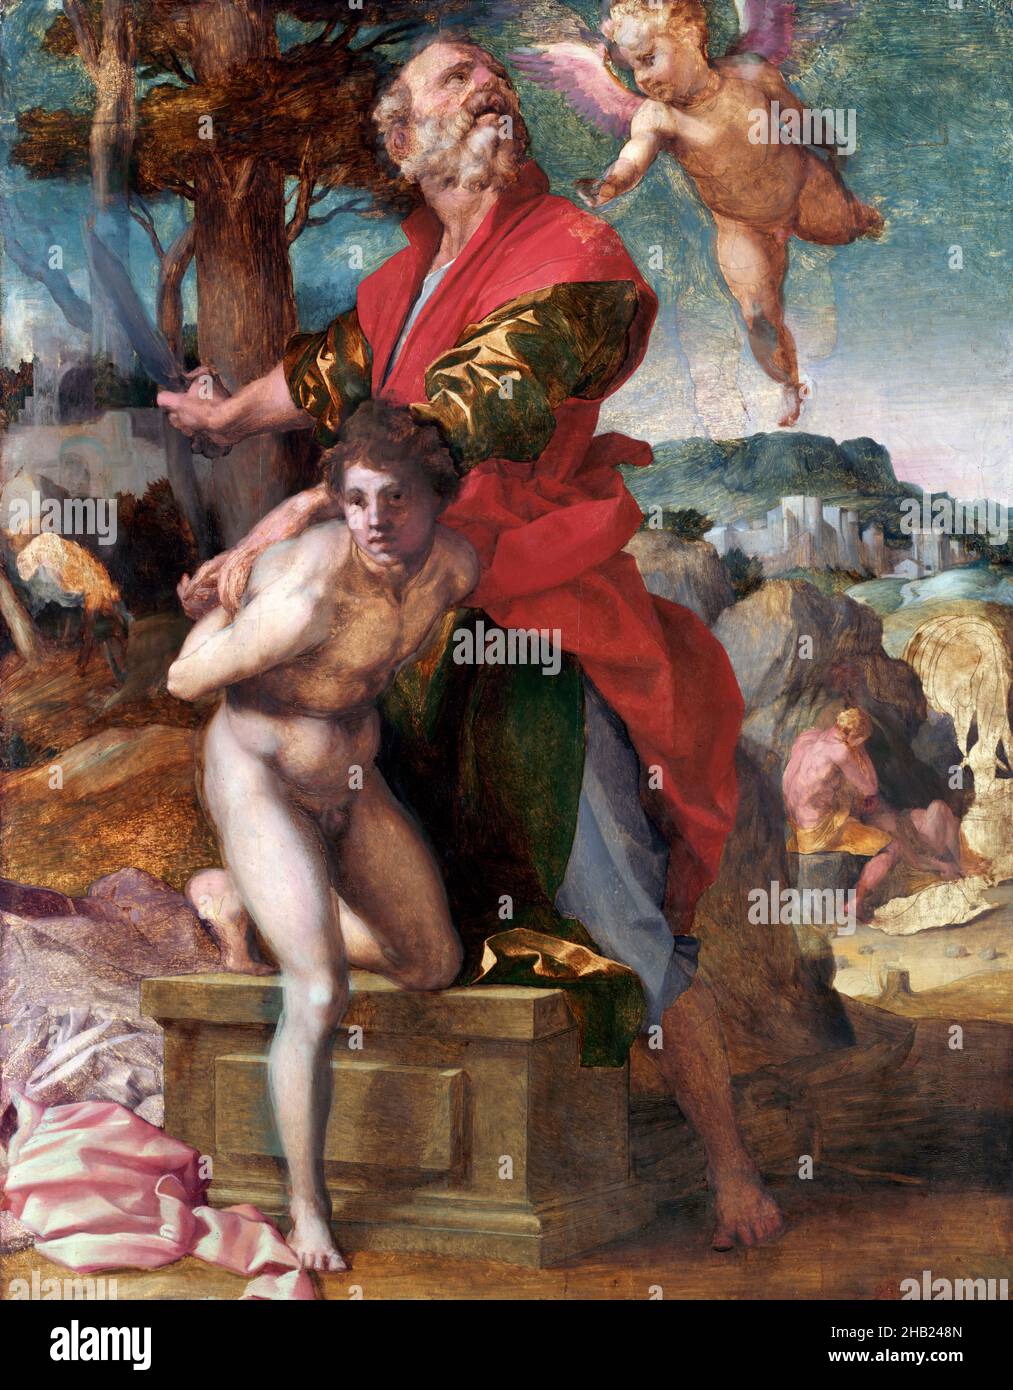 Le sacrifice d'Isaac par Andrea del Sarto (Andrea d'Agnolo : 1486-1530), huile sur bois, c.1527 Banque D'Images